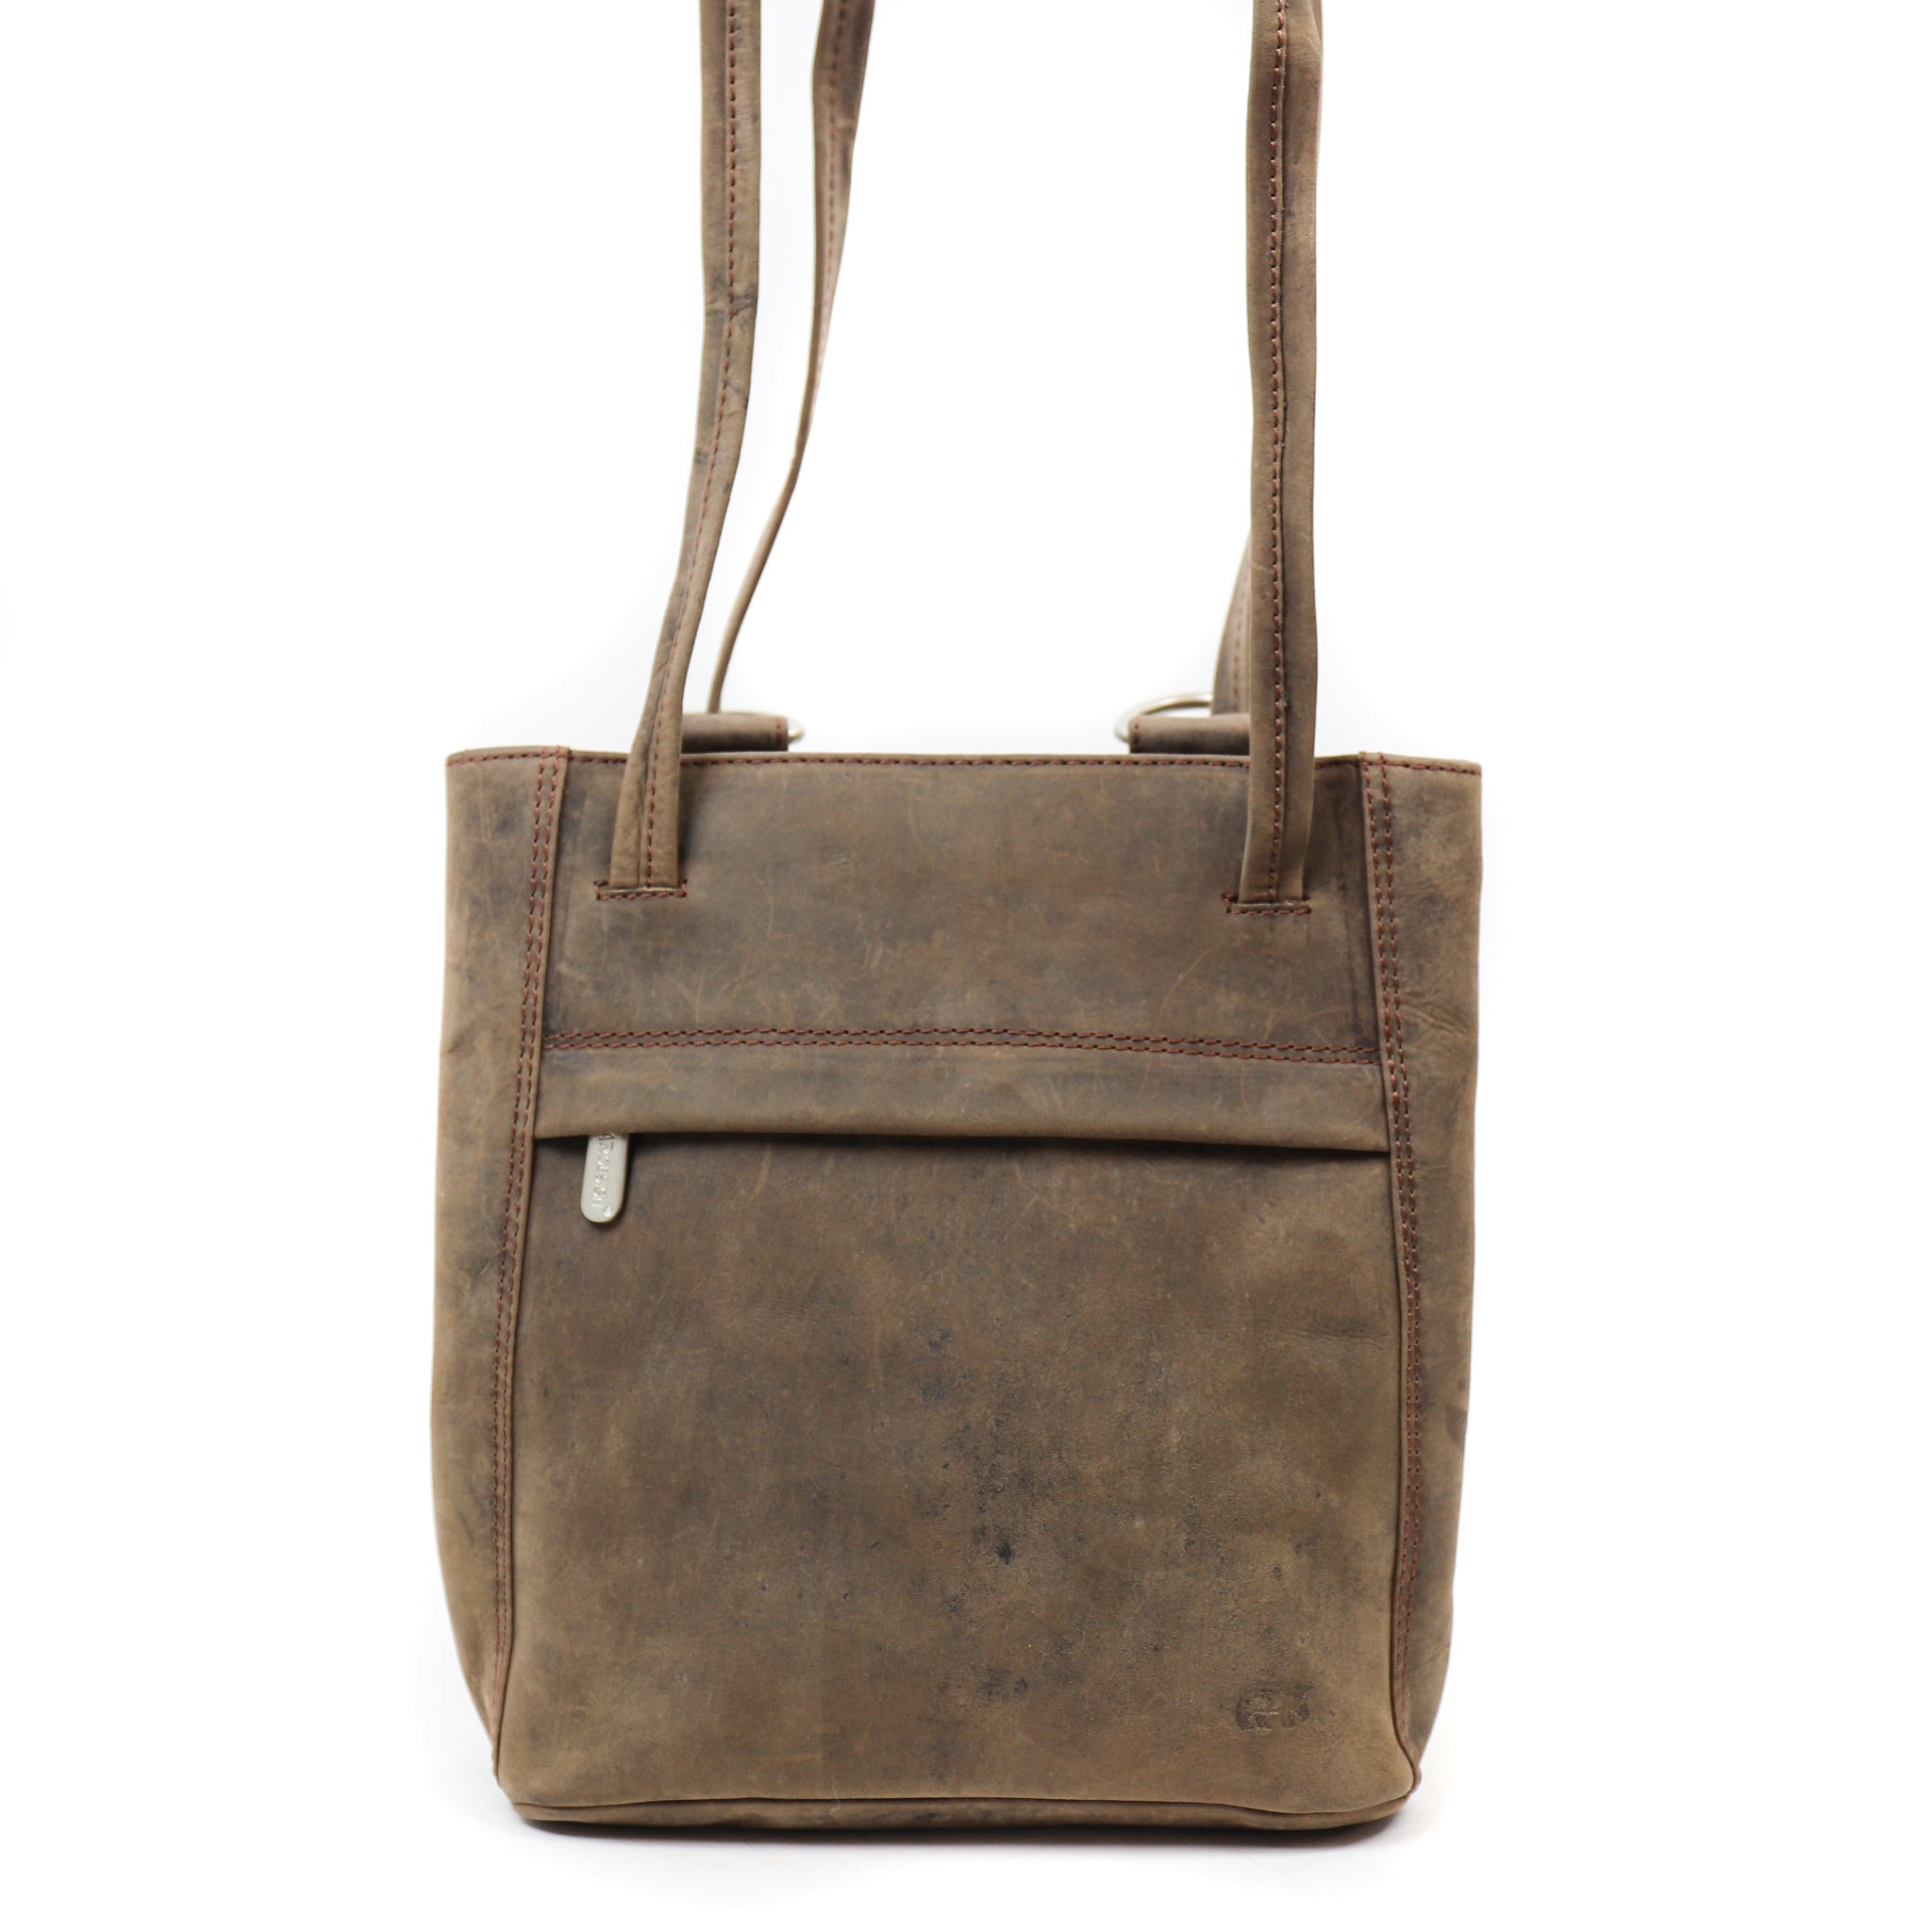 Backpack/shoulder bag 'Sandy' brown - HD 6029